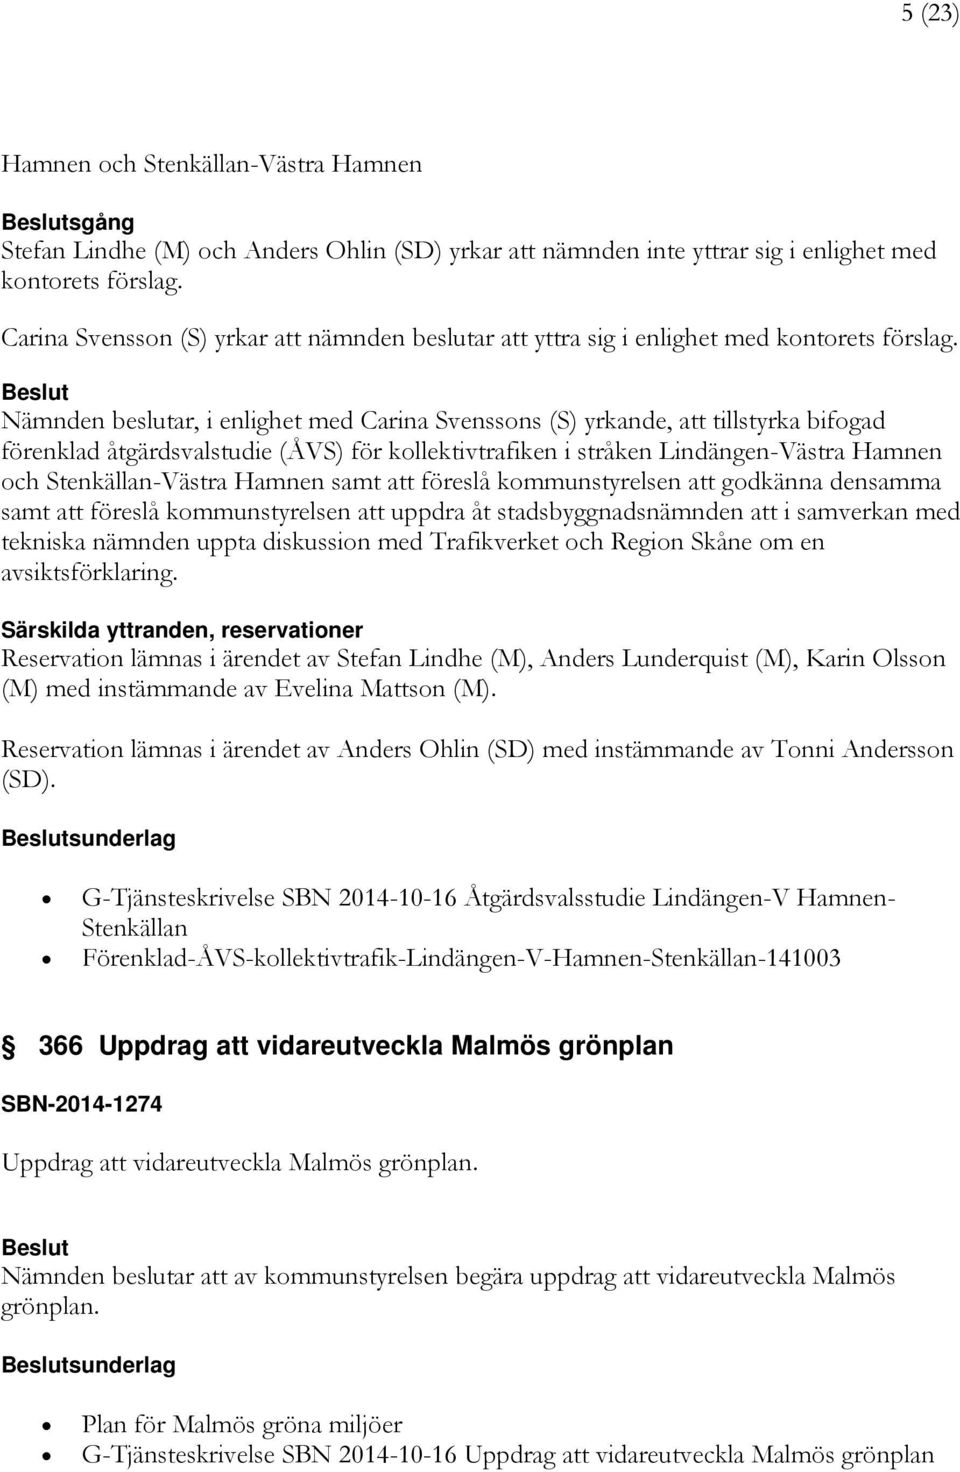 Nämnden beslutar, i enlighet med Carina Svenssons (S) yrkande, att tillstyrka bifogad förenklad åtgärdsvalstudie (ÅVS) för kollektivtrafiken i stråken Lindängen-Västra Hamnen och Stenkällan-Västra